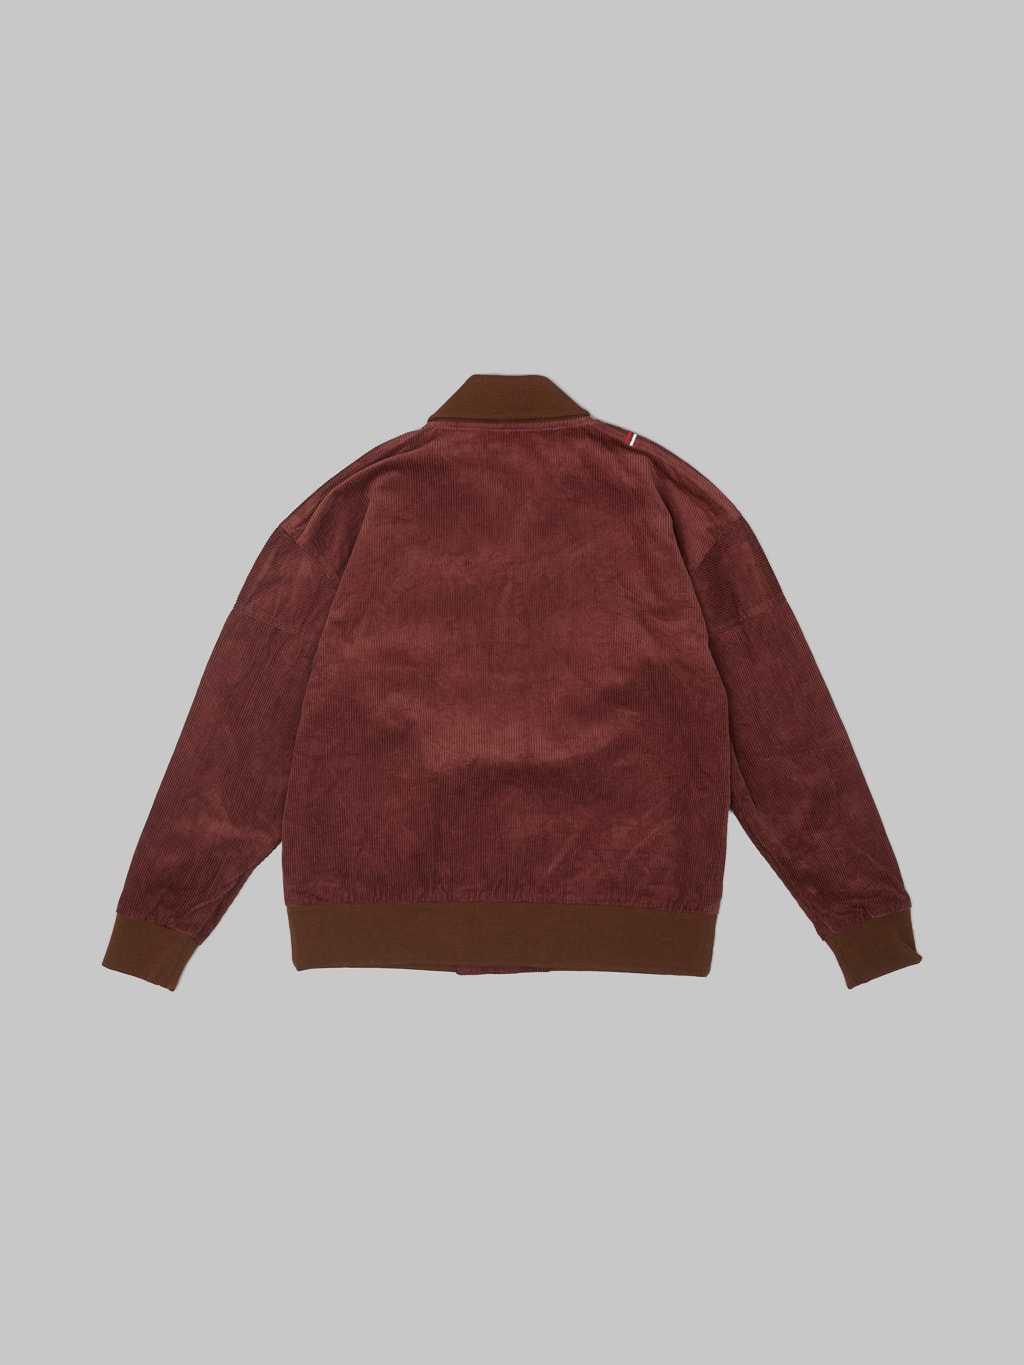 Tanuki Sazanami Corduro mud Dyed brown Jacket back